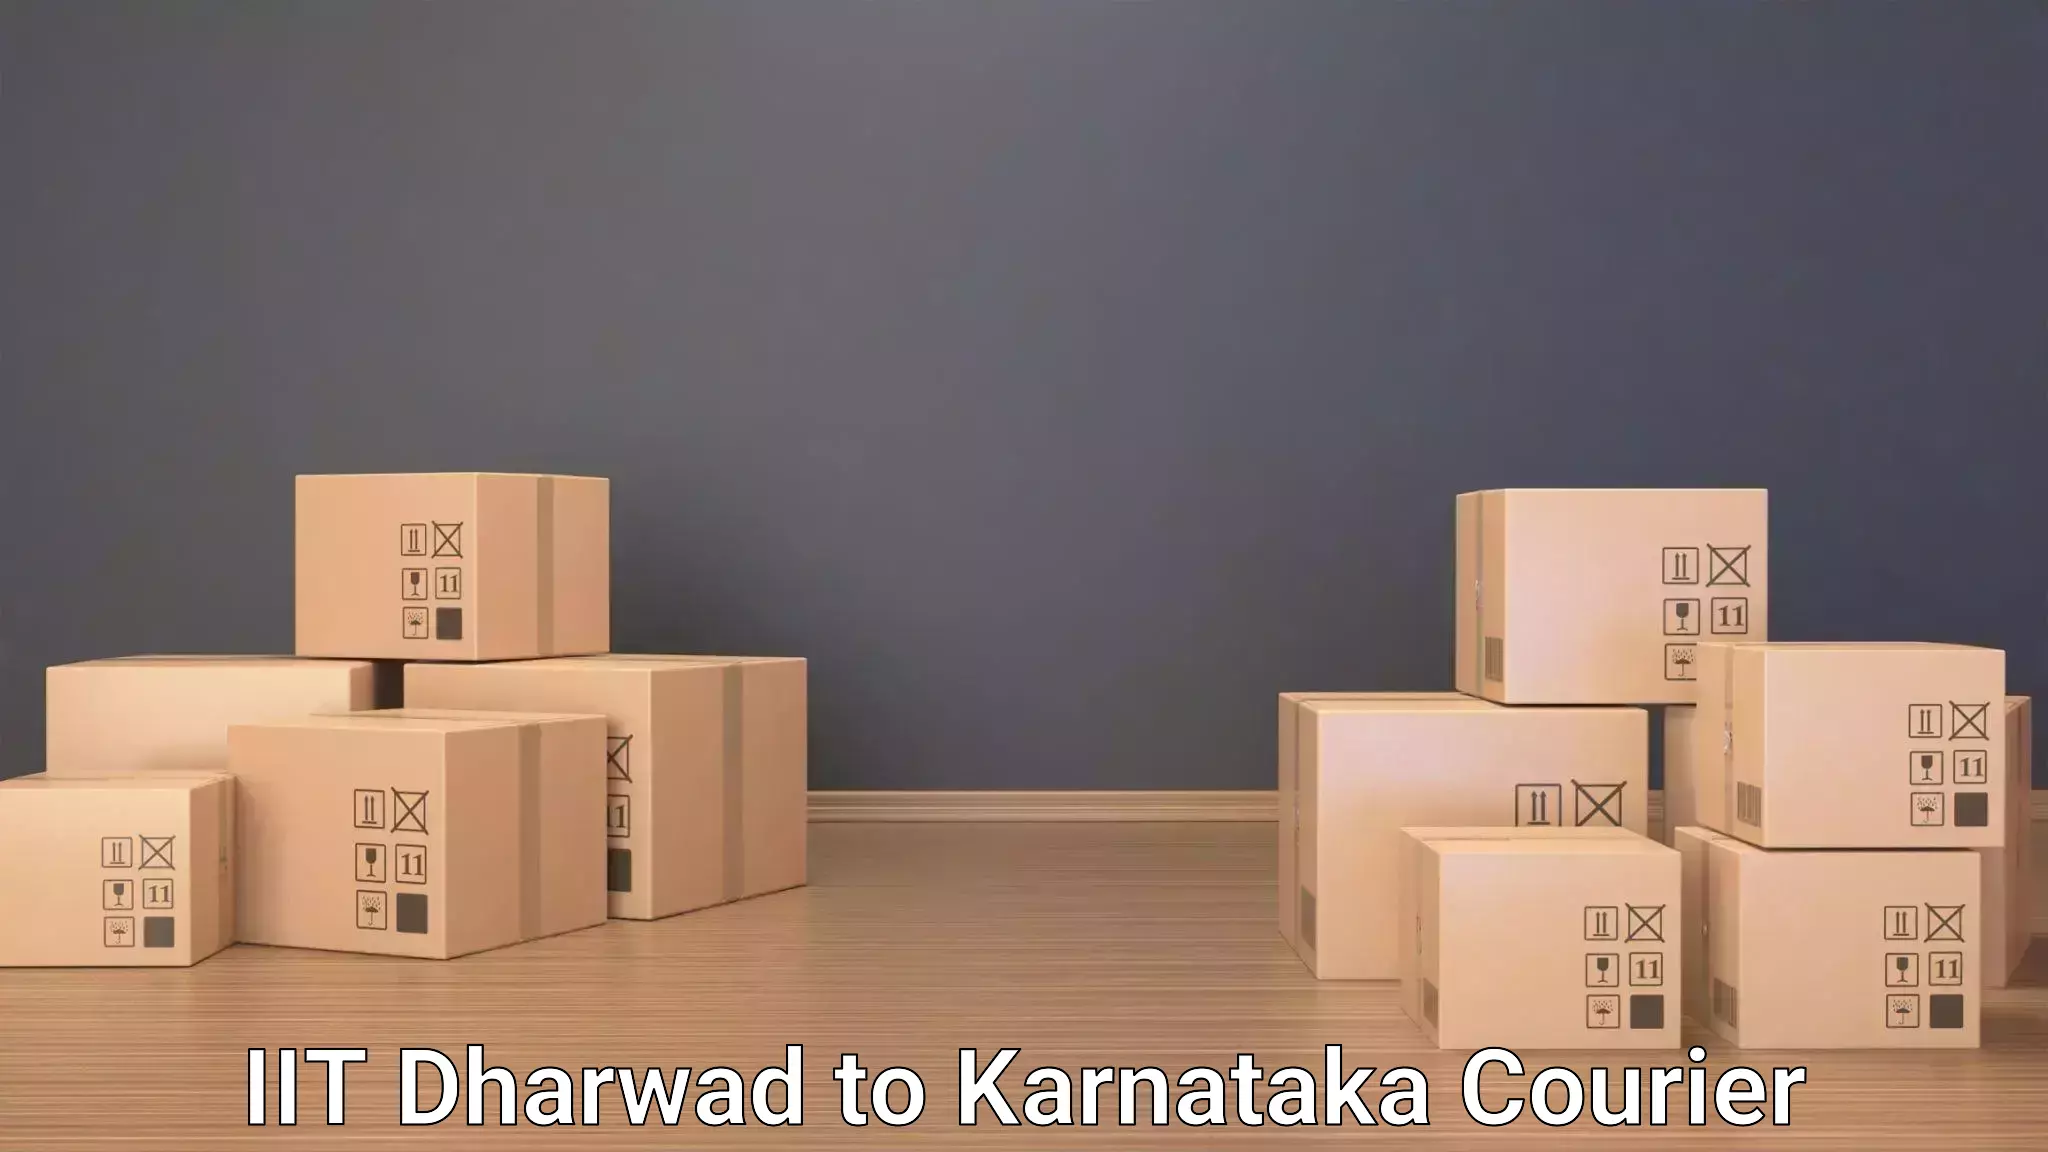 Luggage transport company IIT Dharwad to Yadgiri